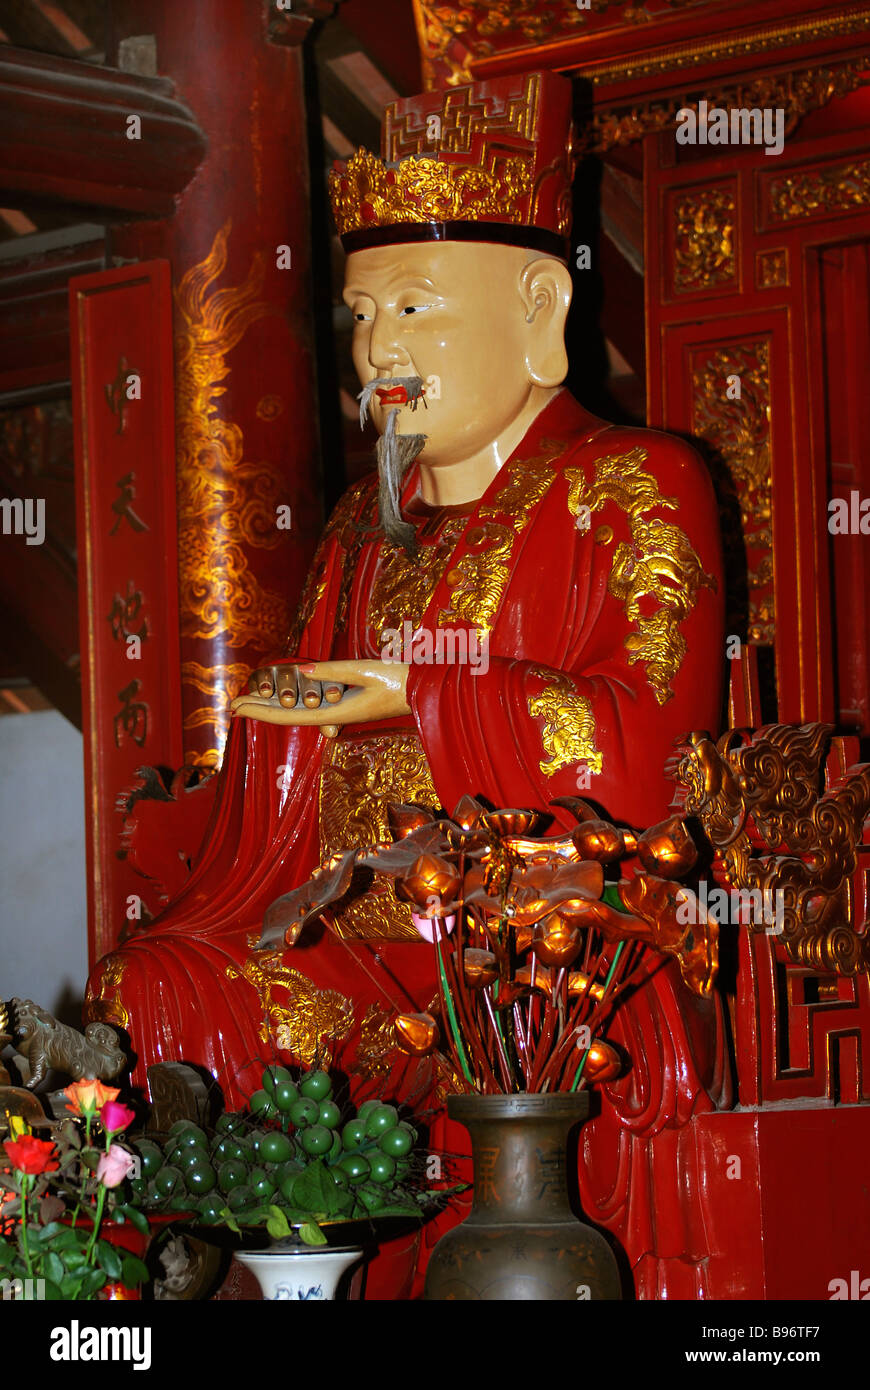 Statue of Confucius in the temple of confucius, Temple of Literature, Hanoi, Vietnam Stock Photo